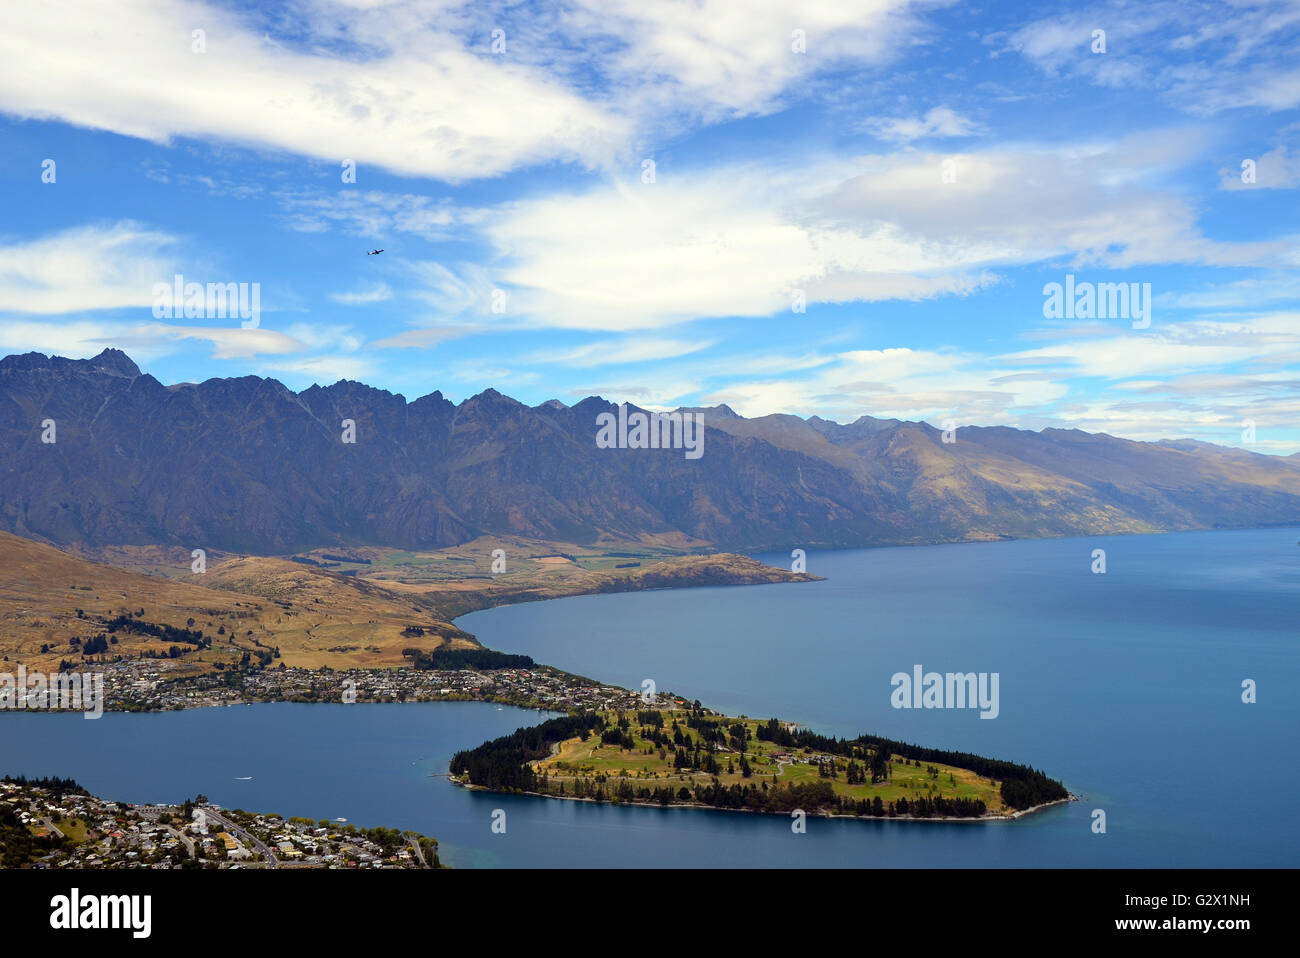 Vista panoramica di Queenstown e sulle montagne circostanti (il Remarkables) sulle rive del lago glaciale di Wakatipu, Nuova Zelanda Foto Stock